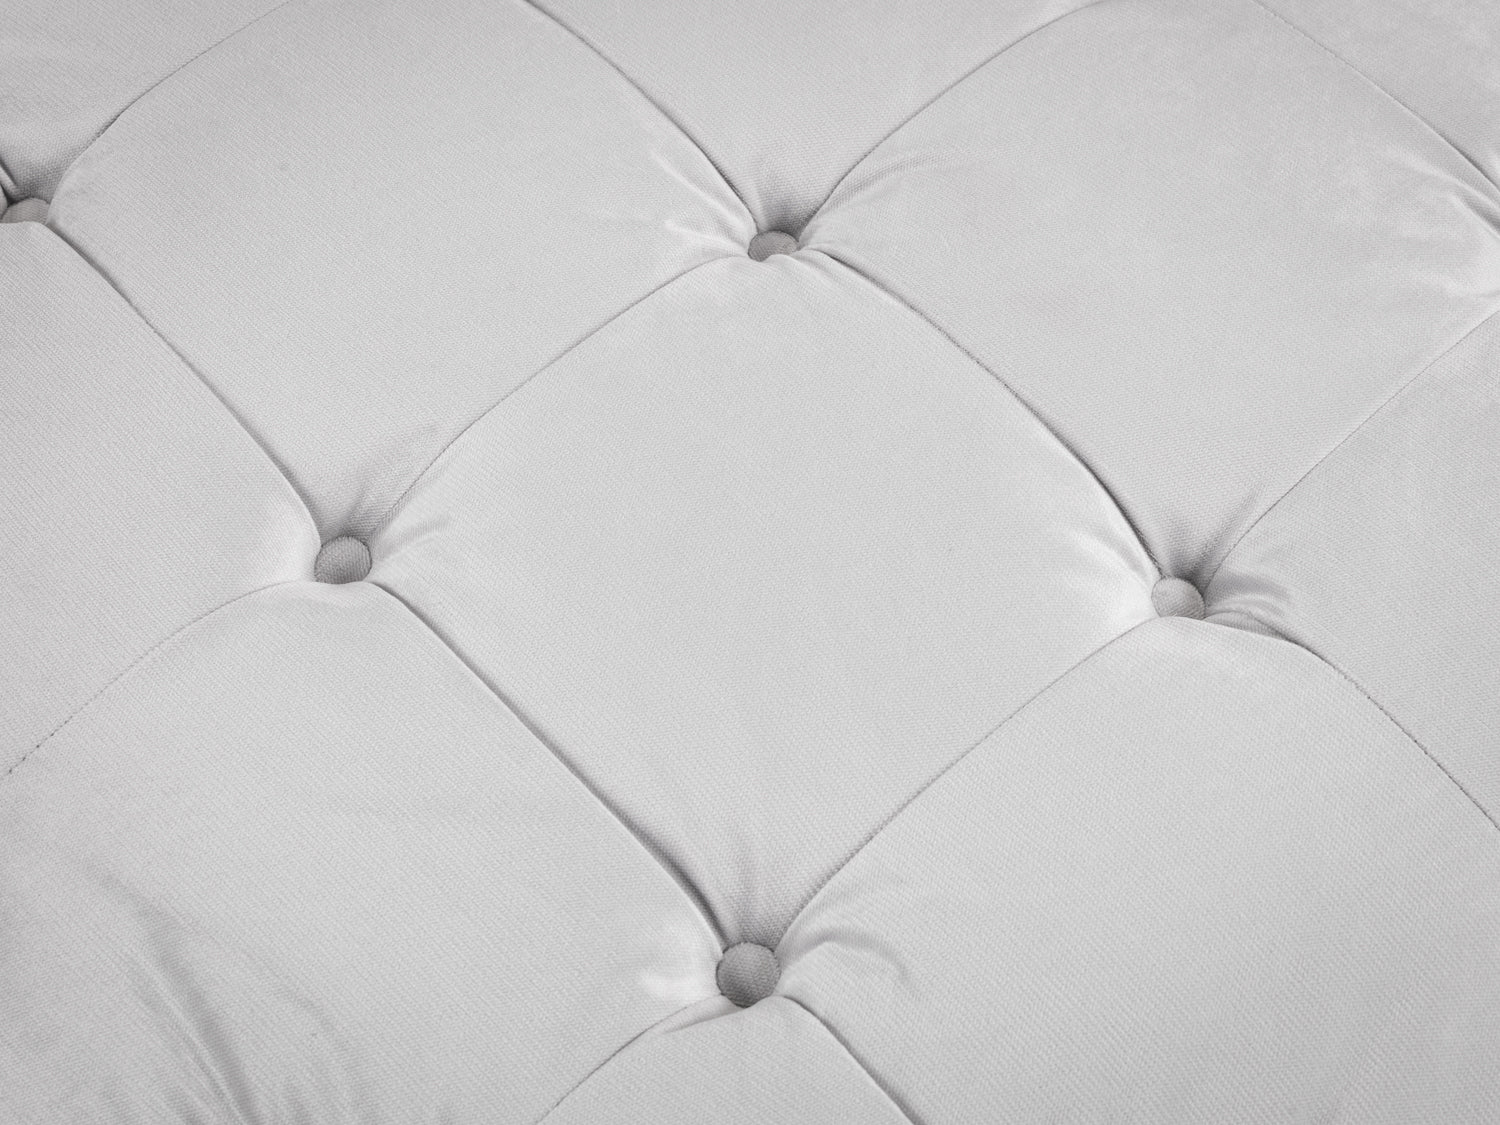 Ankara Fabric Full Corner Sofa